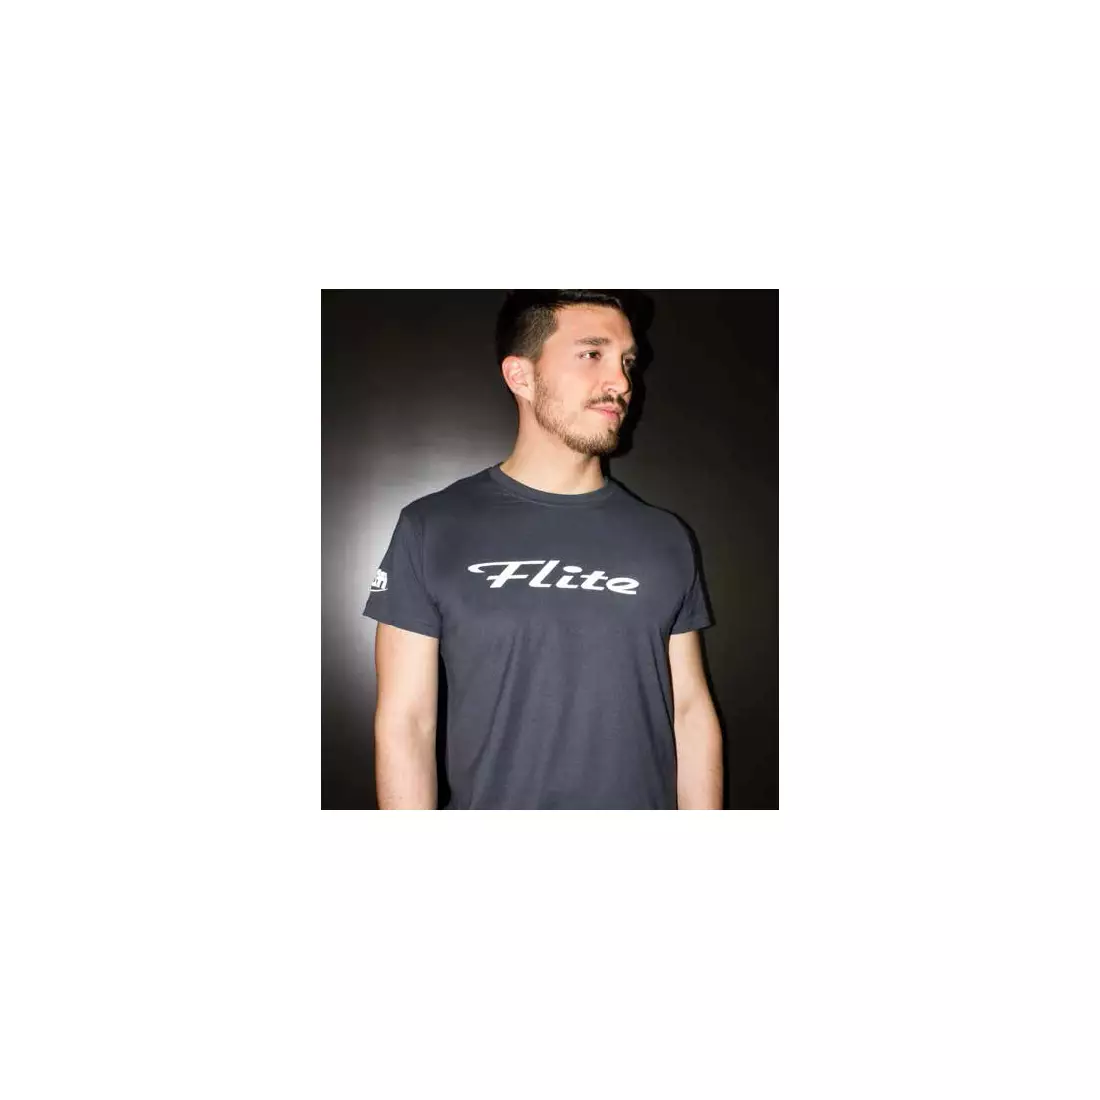 SELLE ITALIA Pánské tričko s krátkým rukávem FLITE antracitově šedé SIT-98541S0000006